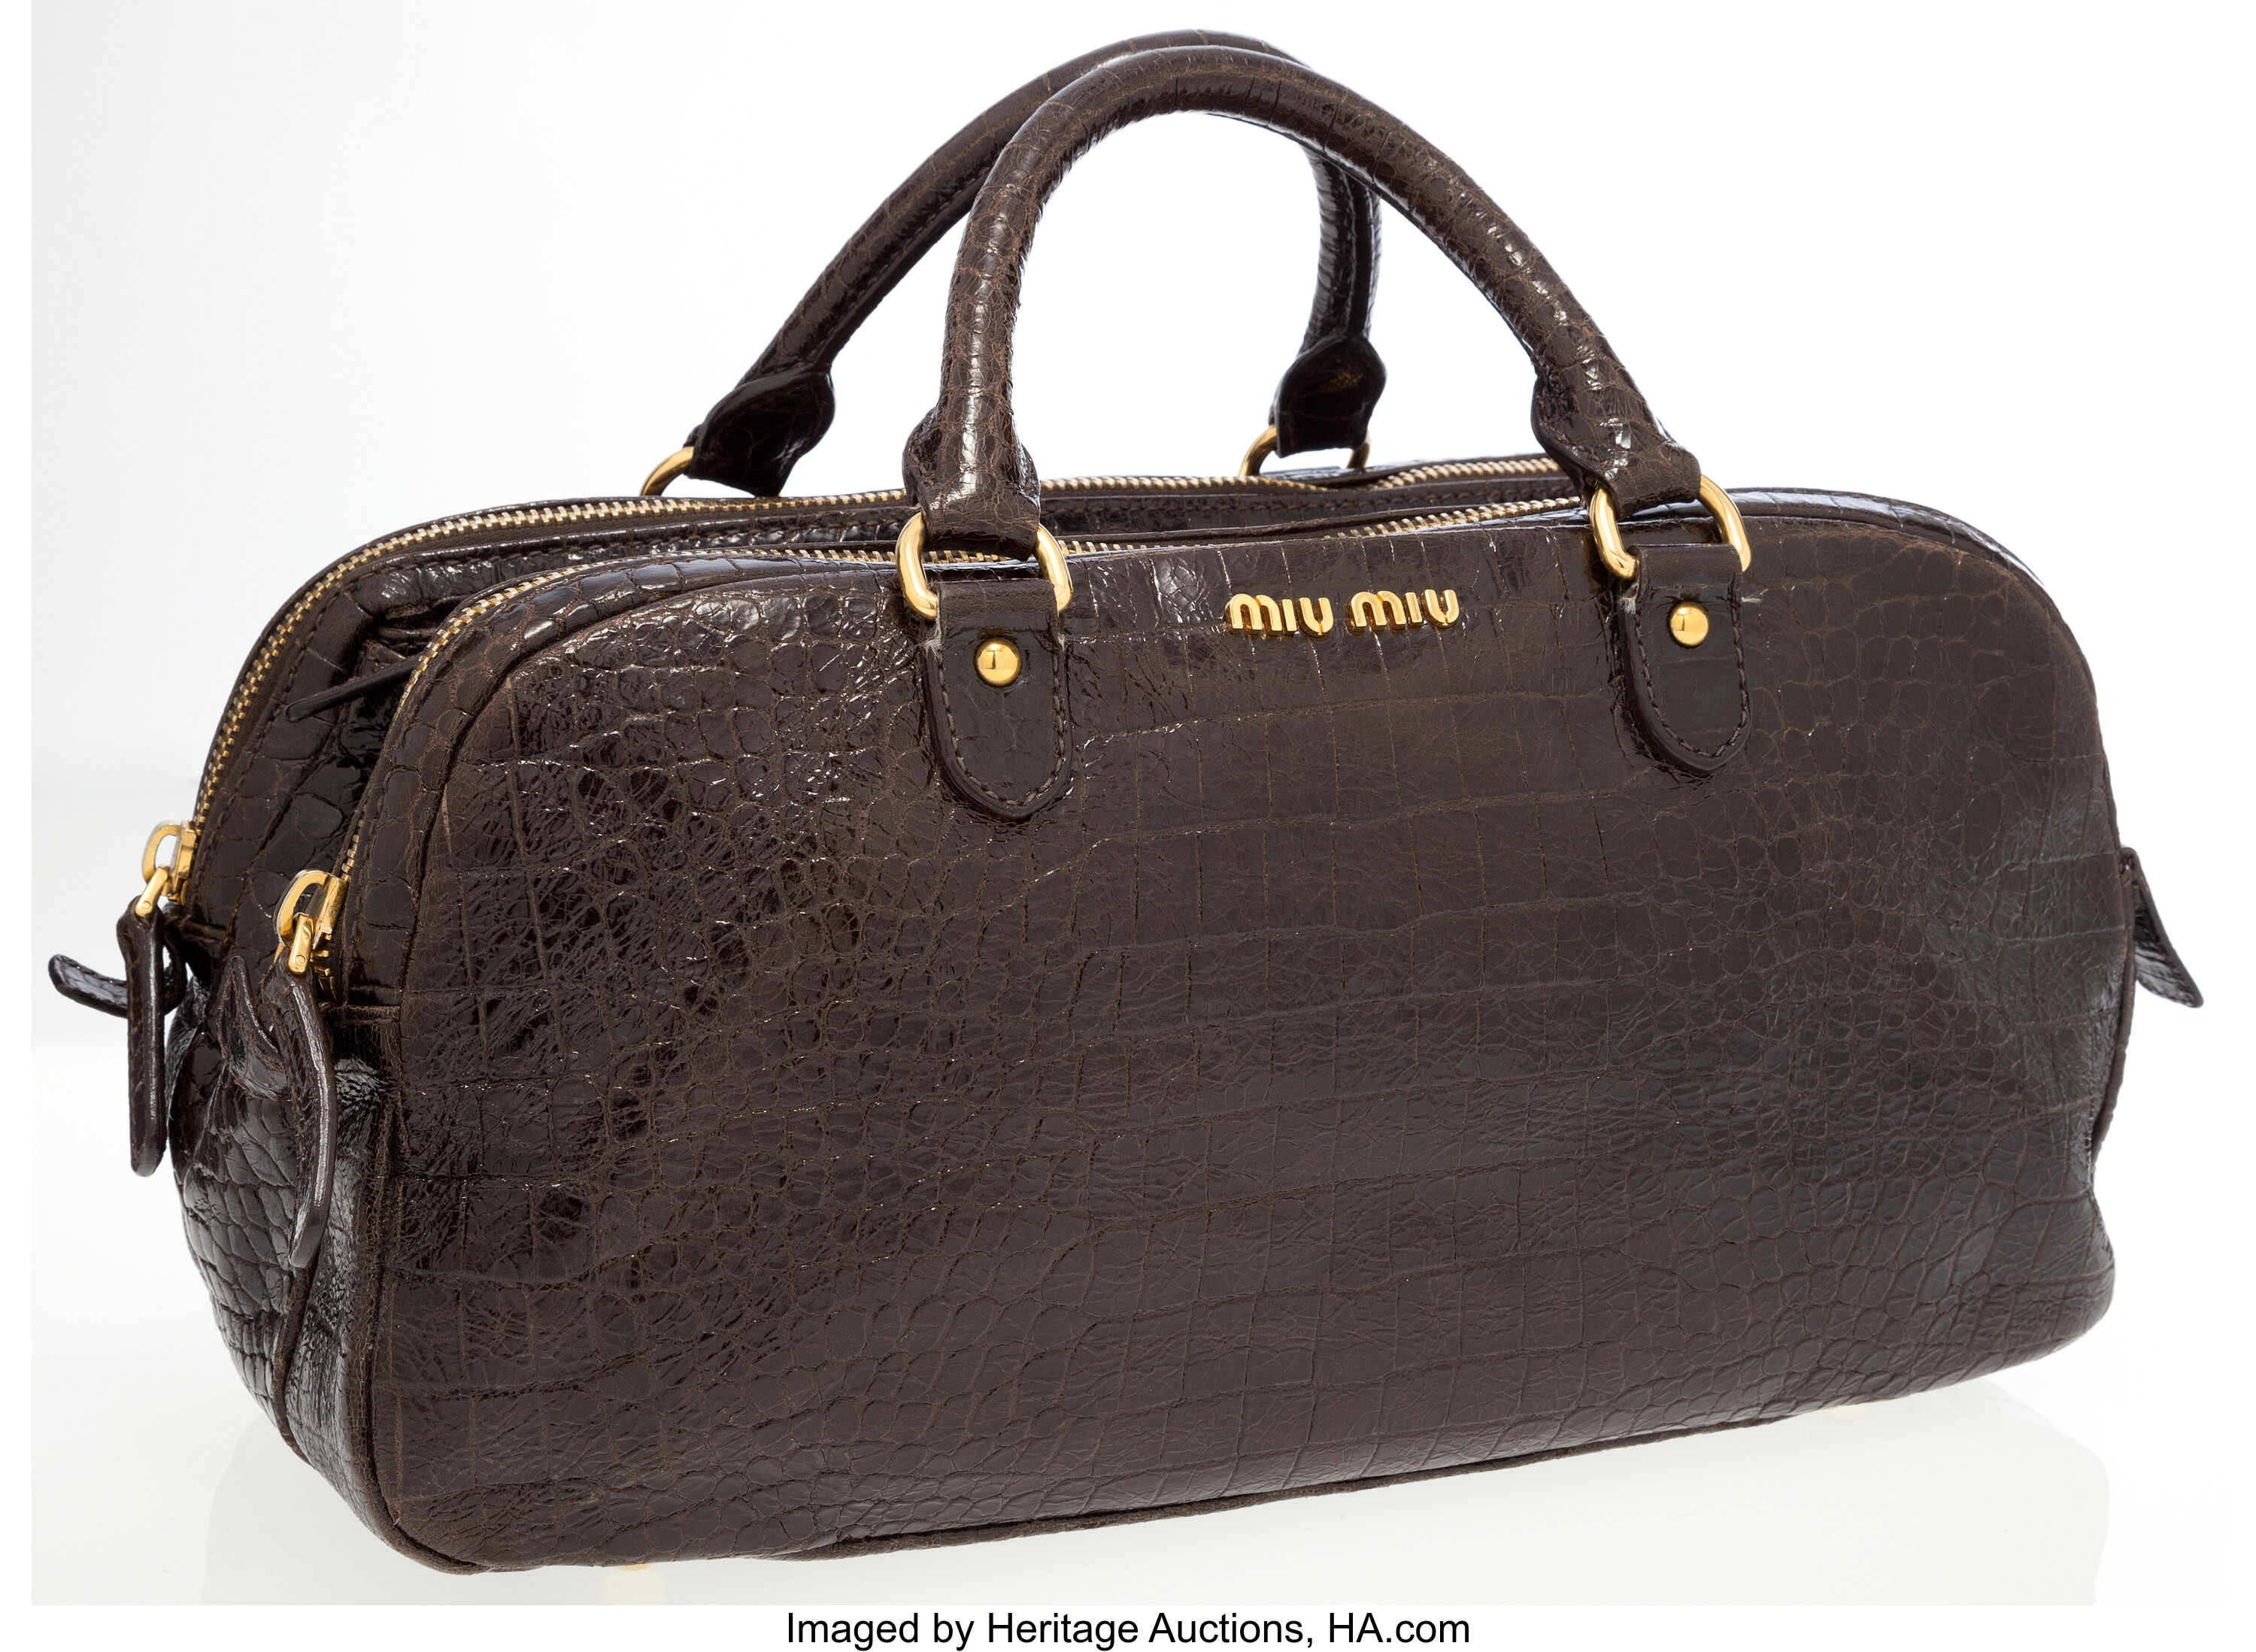 Buy Miu Miu Vintage Large Leather Satchel Bag Online in India 